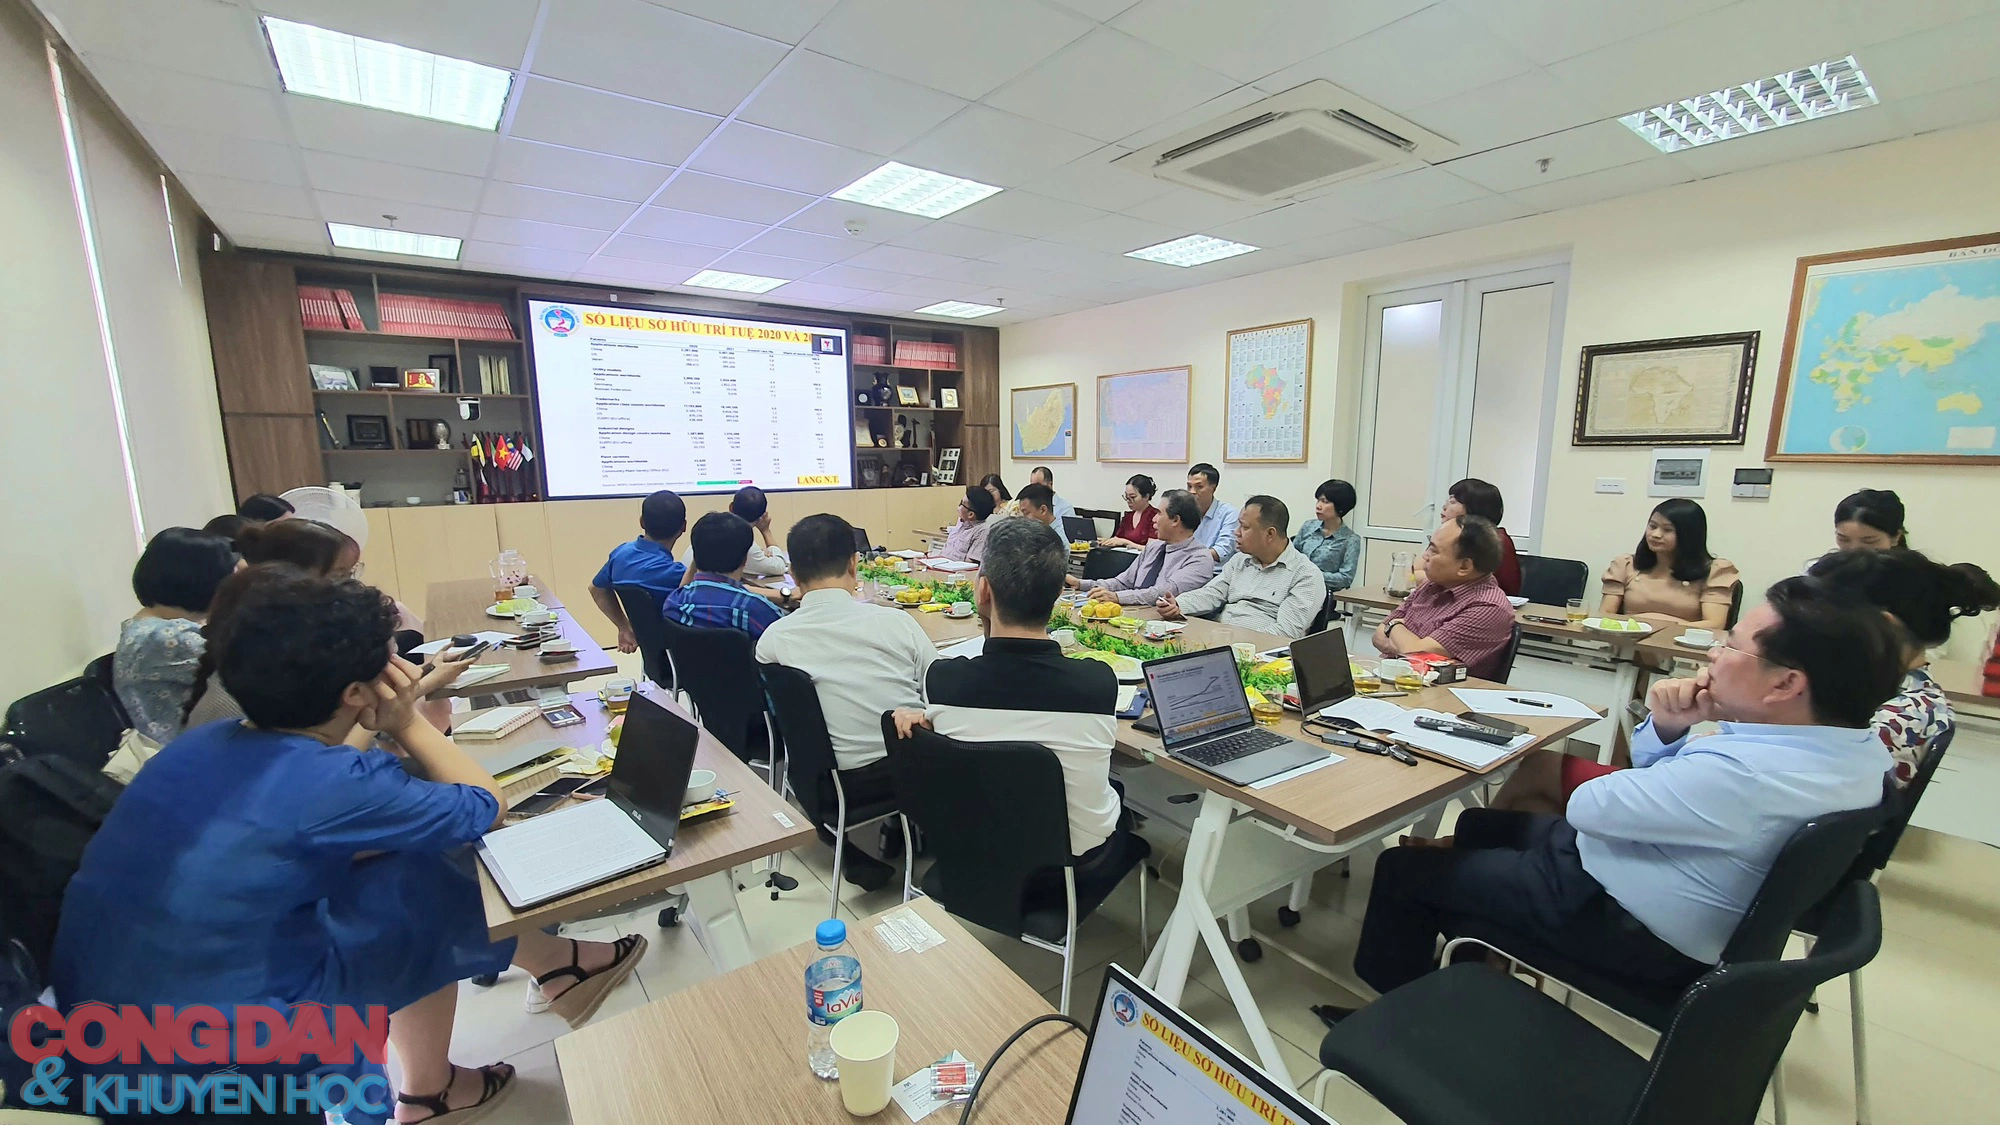 Kinh doanh sản phẩm và dịch vụ khoa học công nghệ Việt Nam trong bối cảnh mới - Ảnh 3.